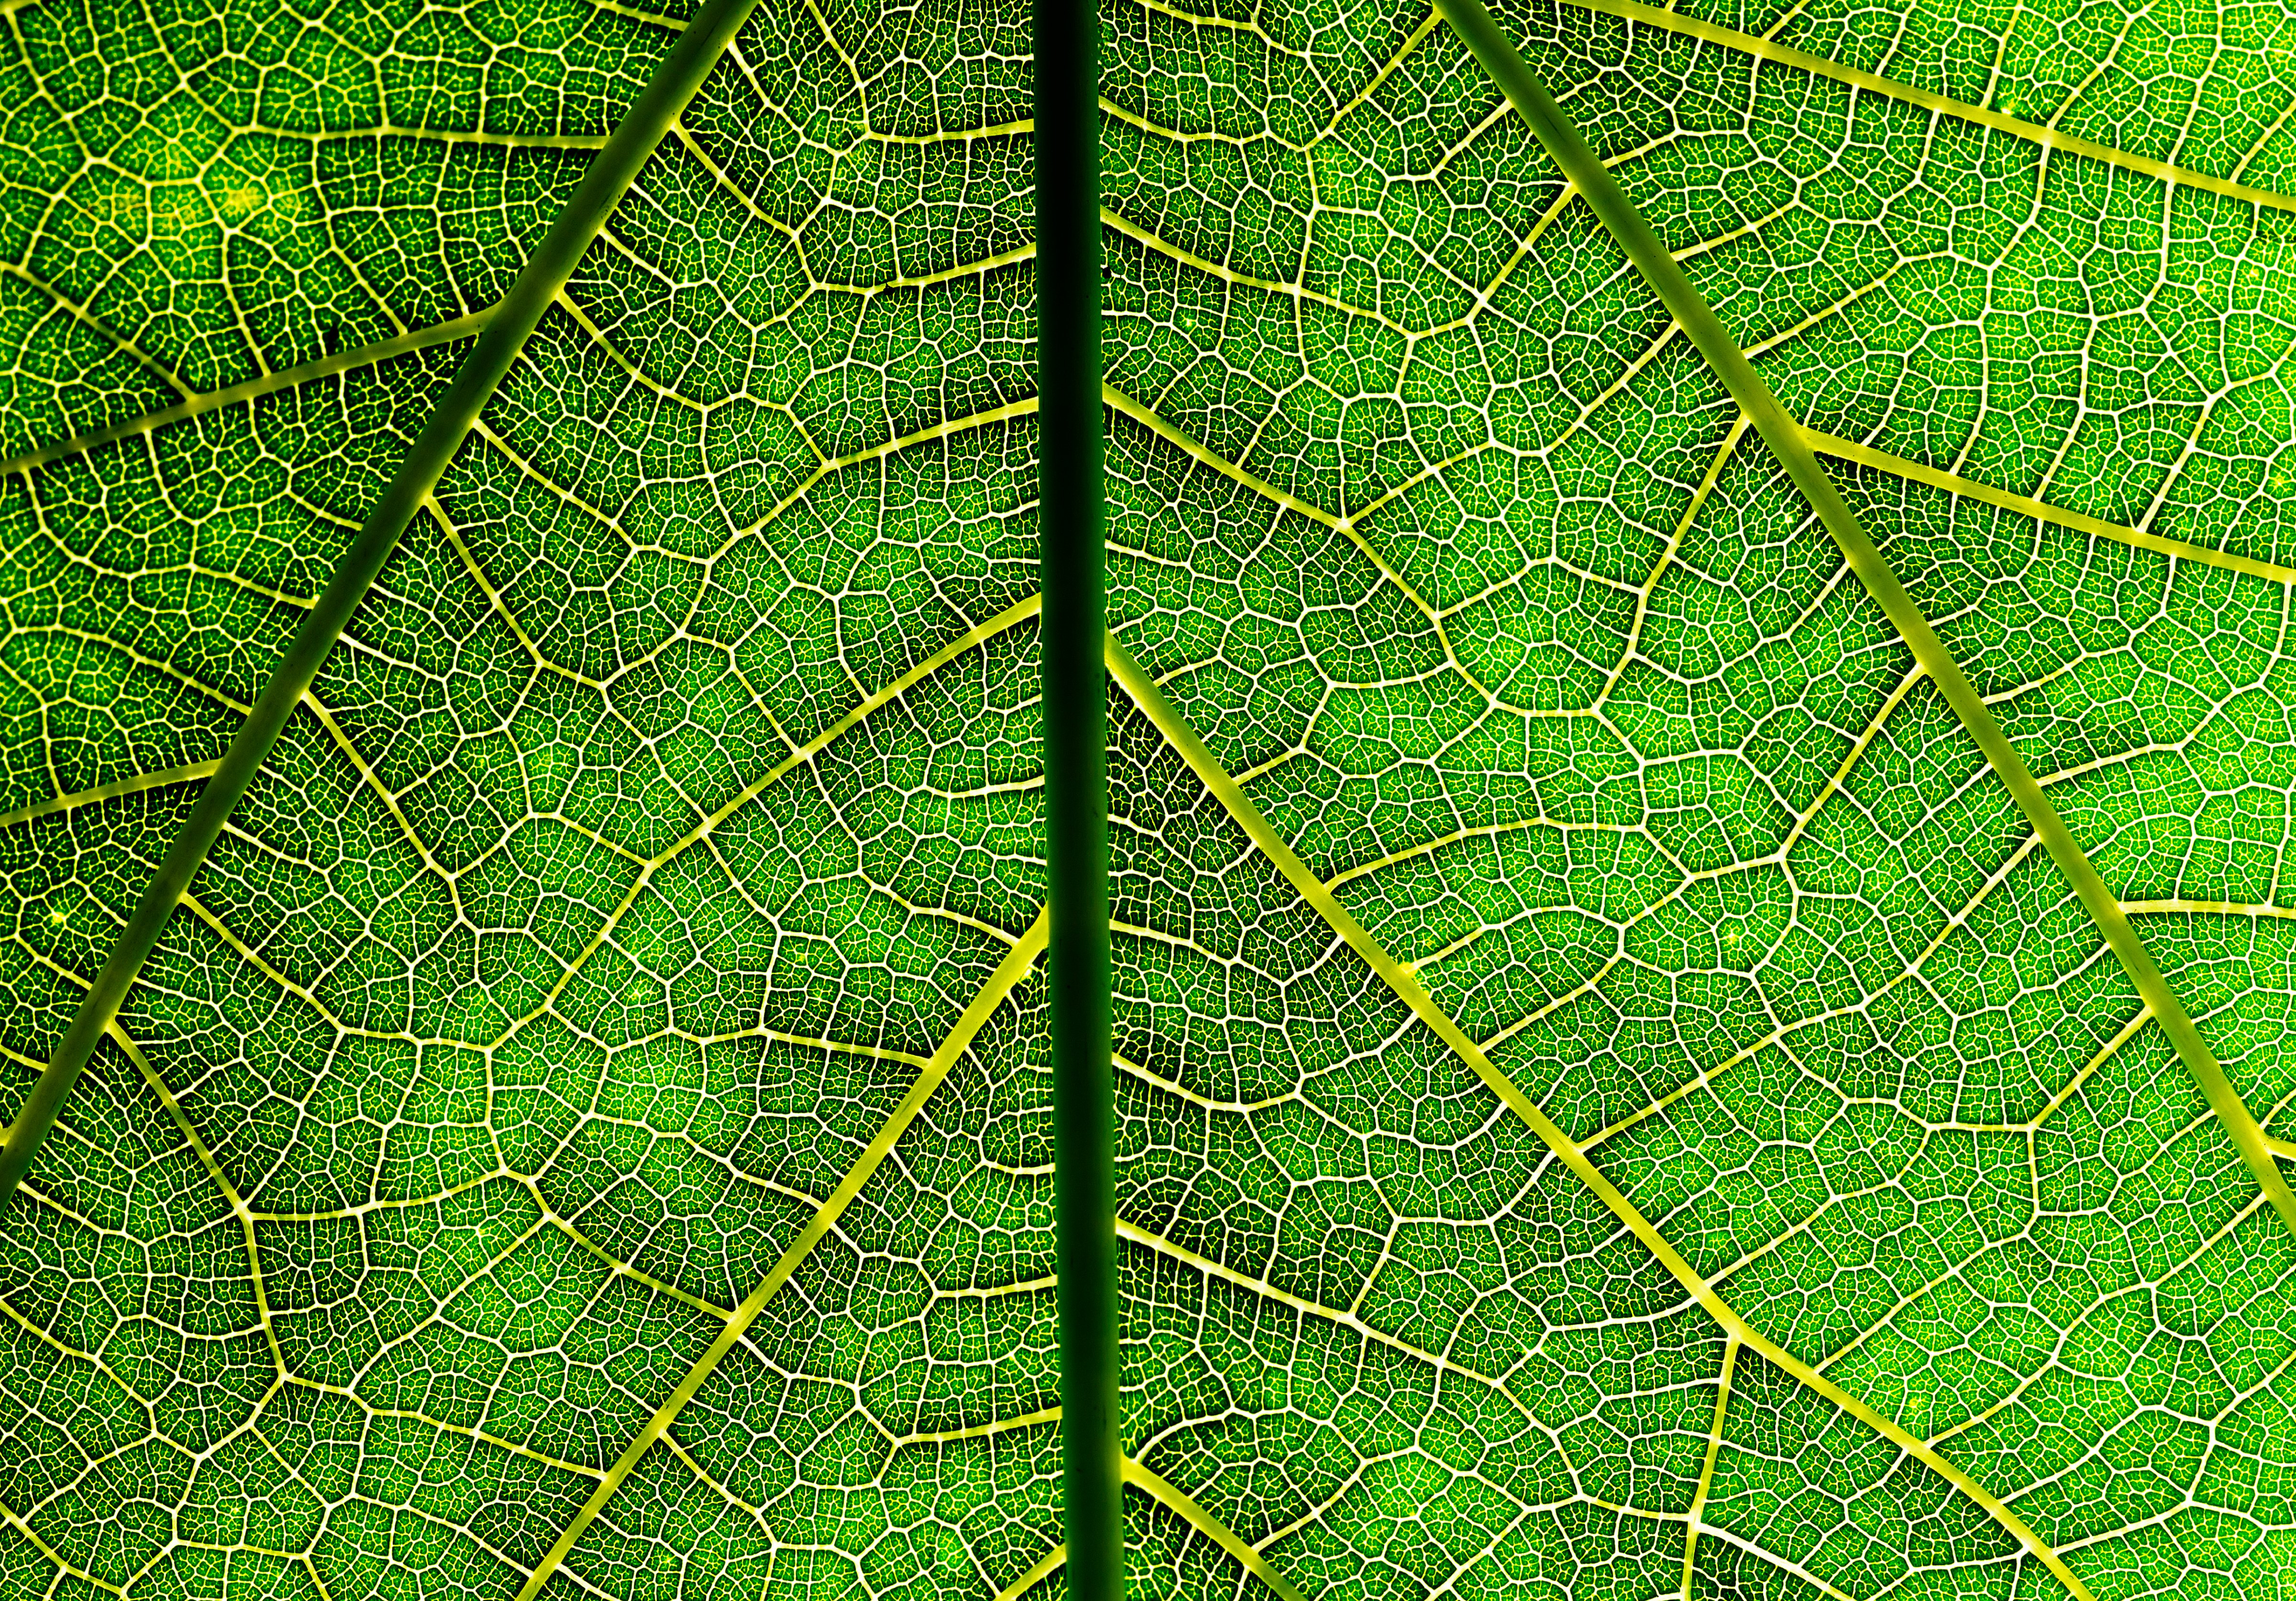 veins of a leaf (Mark Mawson&mdash;Getty Images)